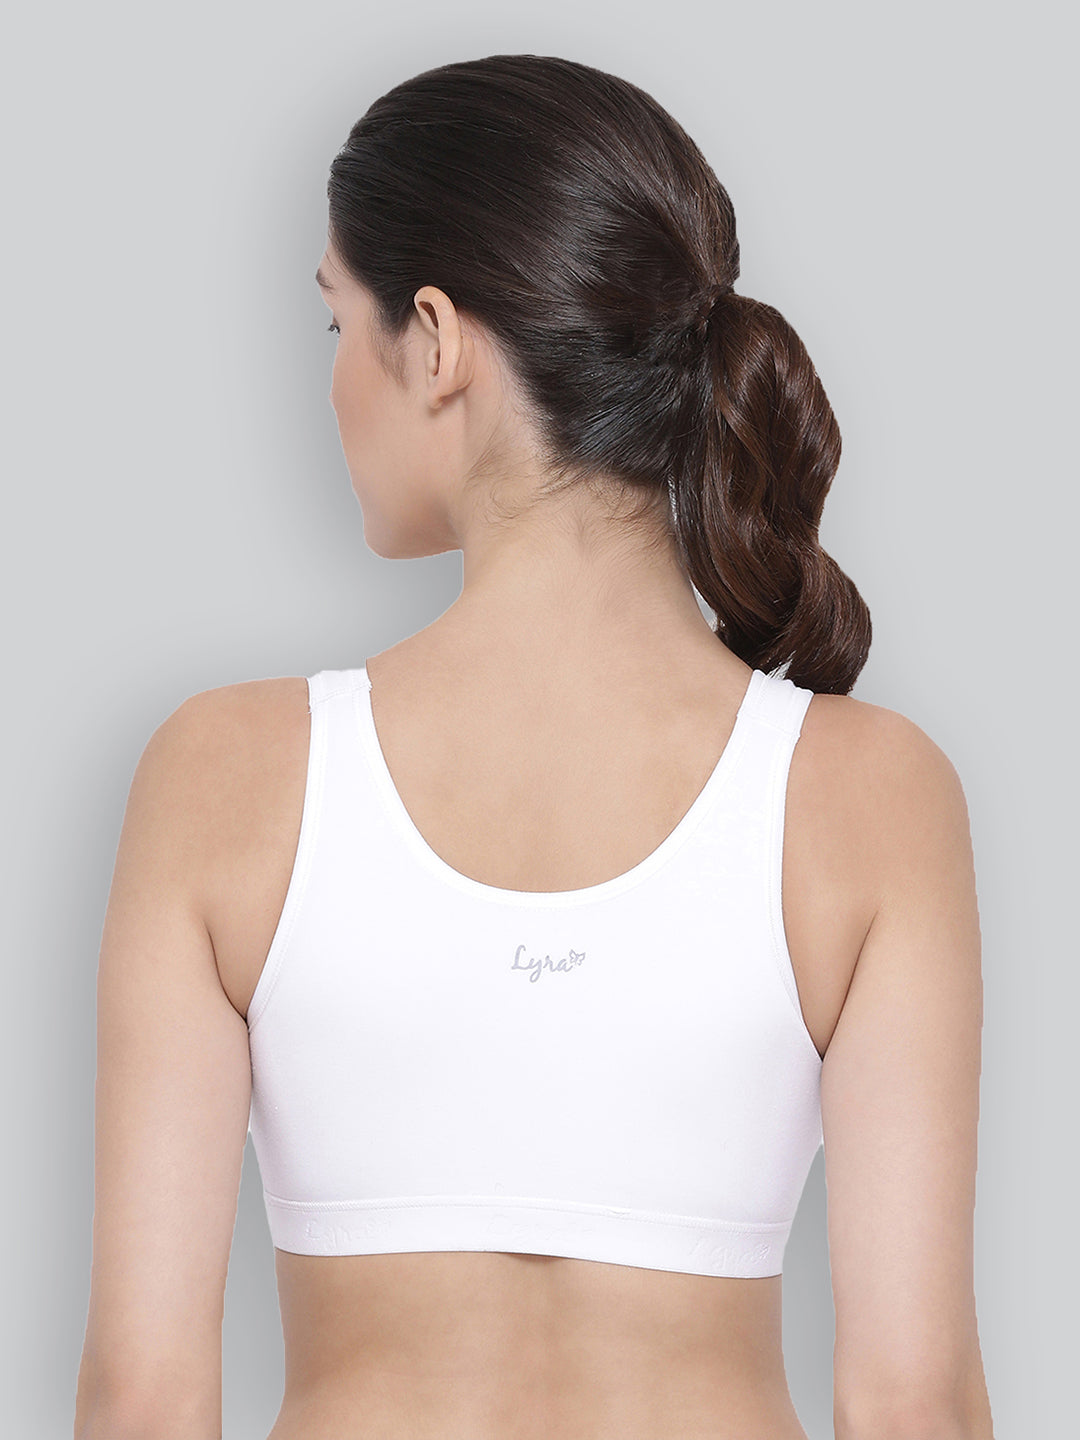 Buy Lyra Women's Casual Bra Beginners 1pc_White_XS at